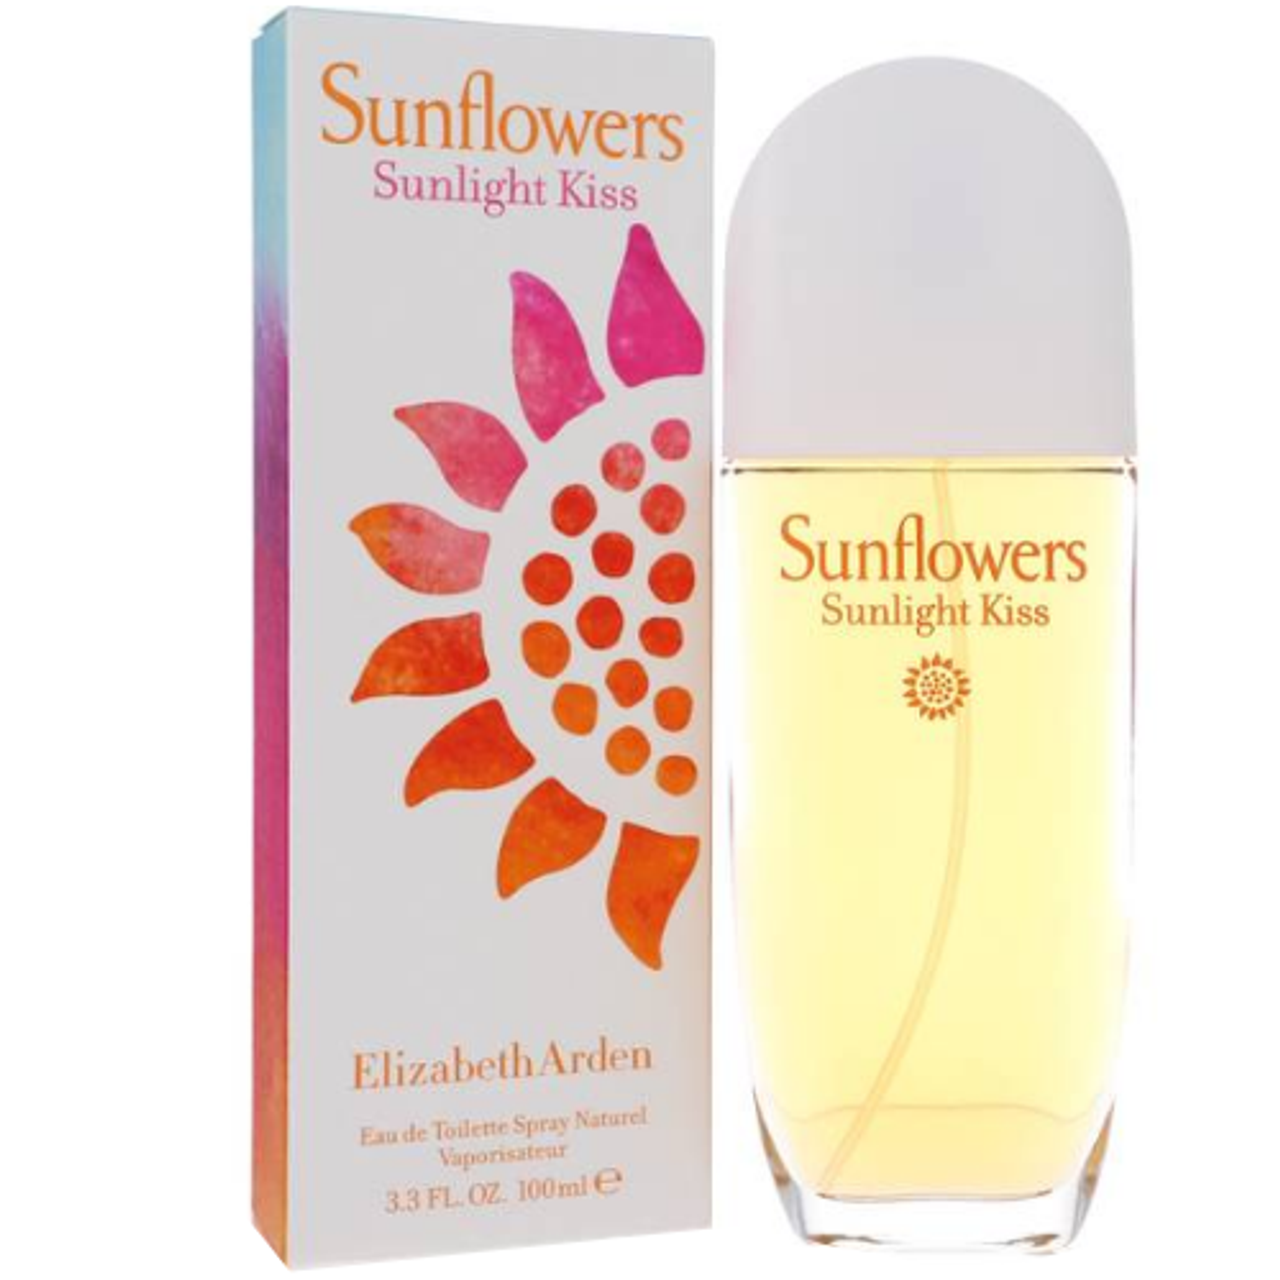 Sunflowers Sunlight Kiss by Elizabeth 3.3 oz for EDT Arden Women ForeverLux 